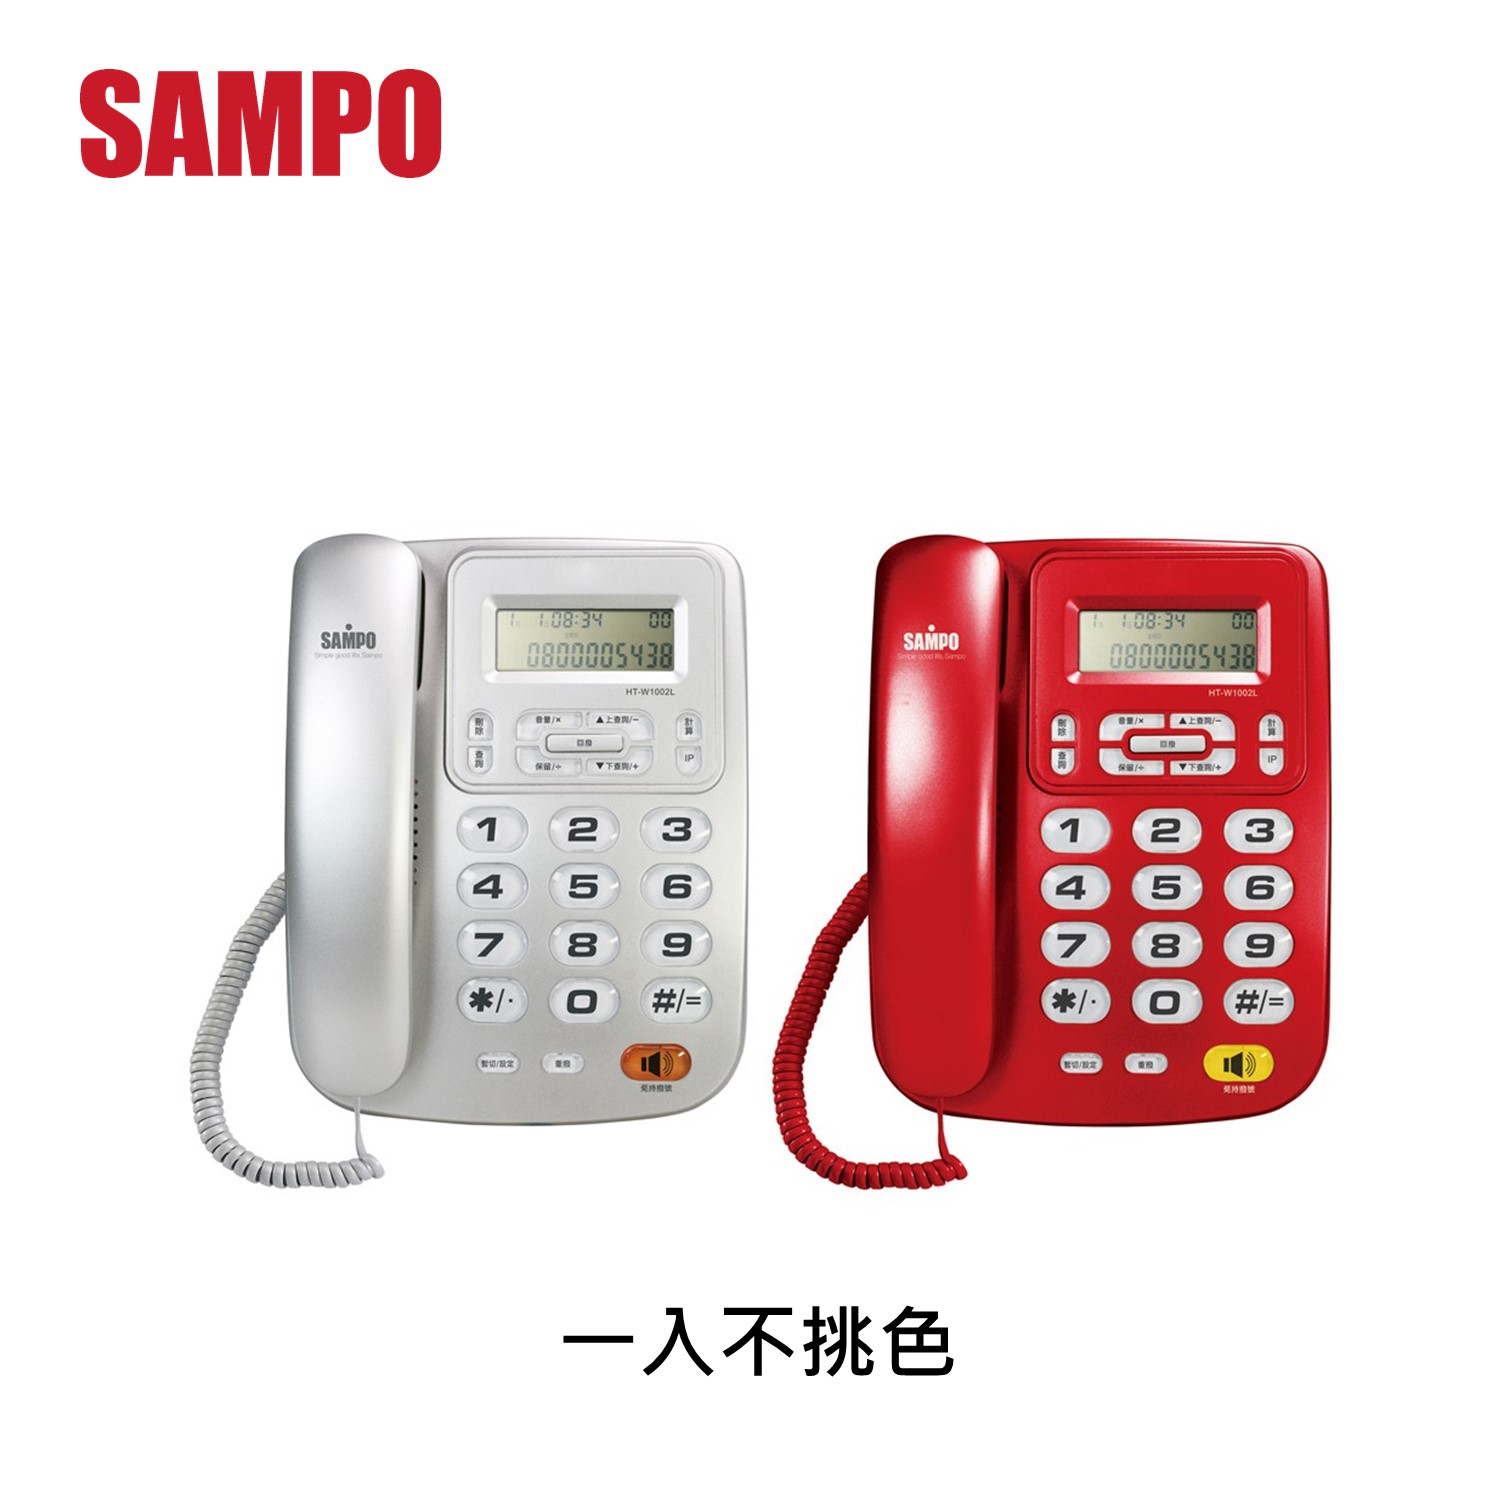 聲寶SAMPO 有線電話(隨機出貨不挑色)